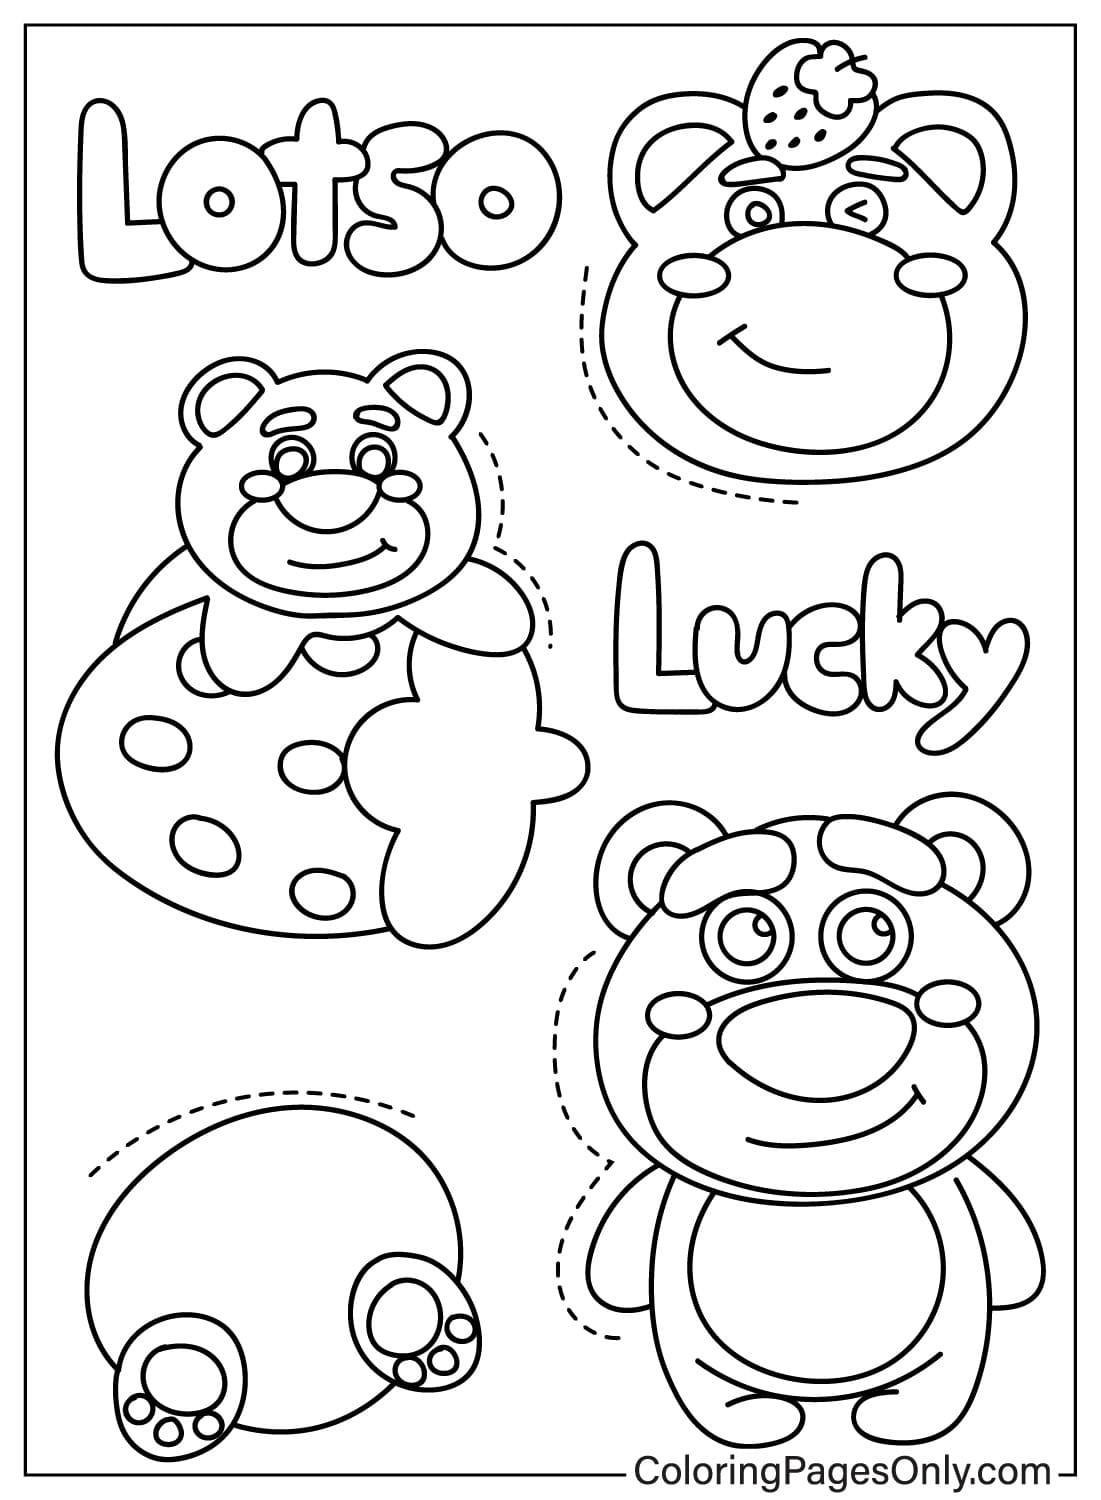 Lotso Bear Coloring Page to Print from Lotso Bear